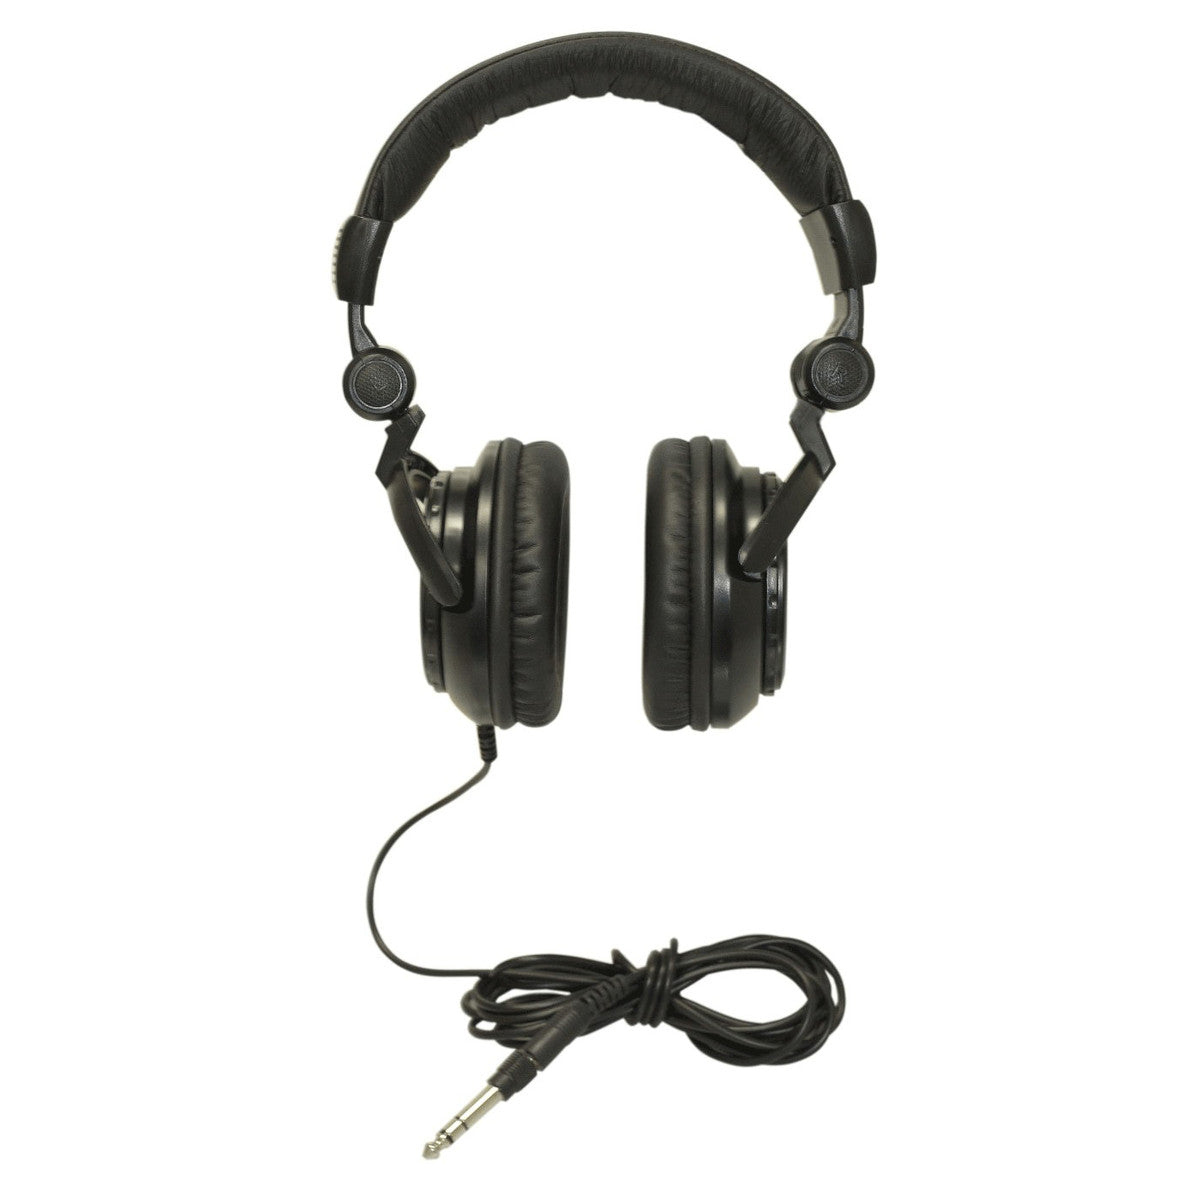 TASCAM TH-02 Studio Headphones